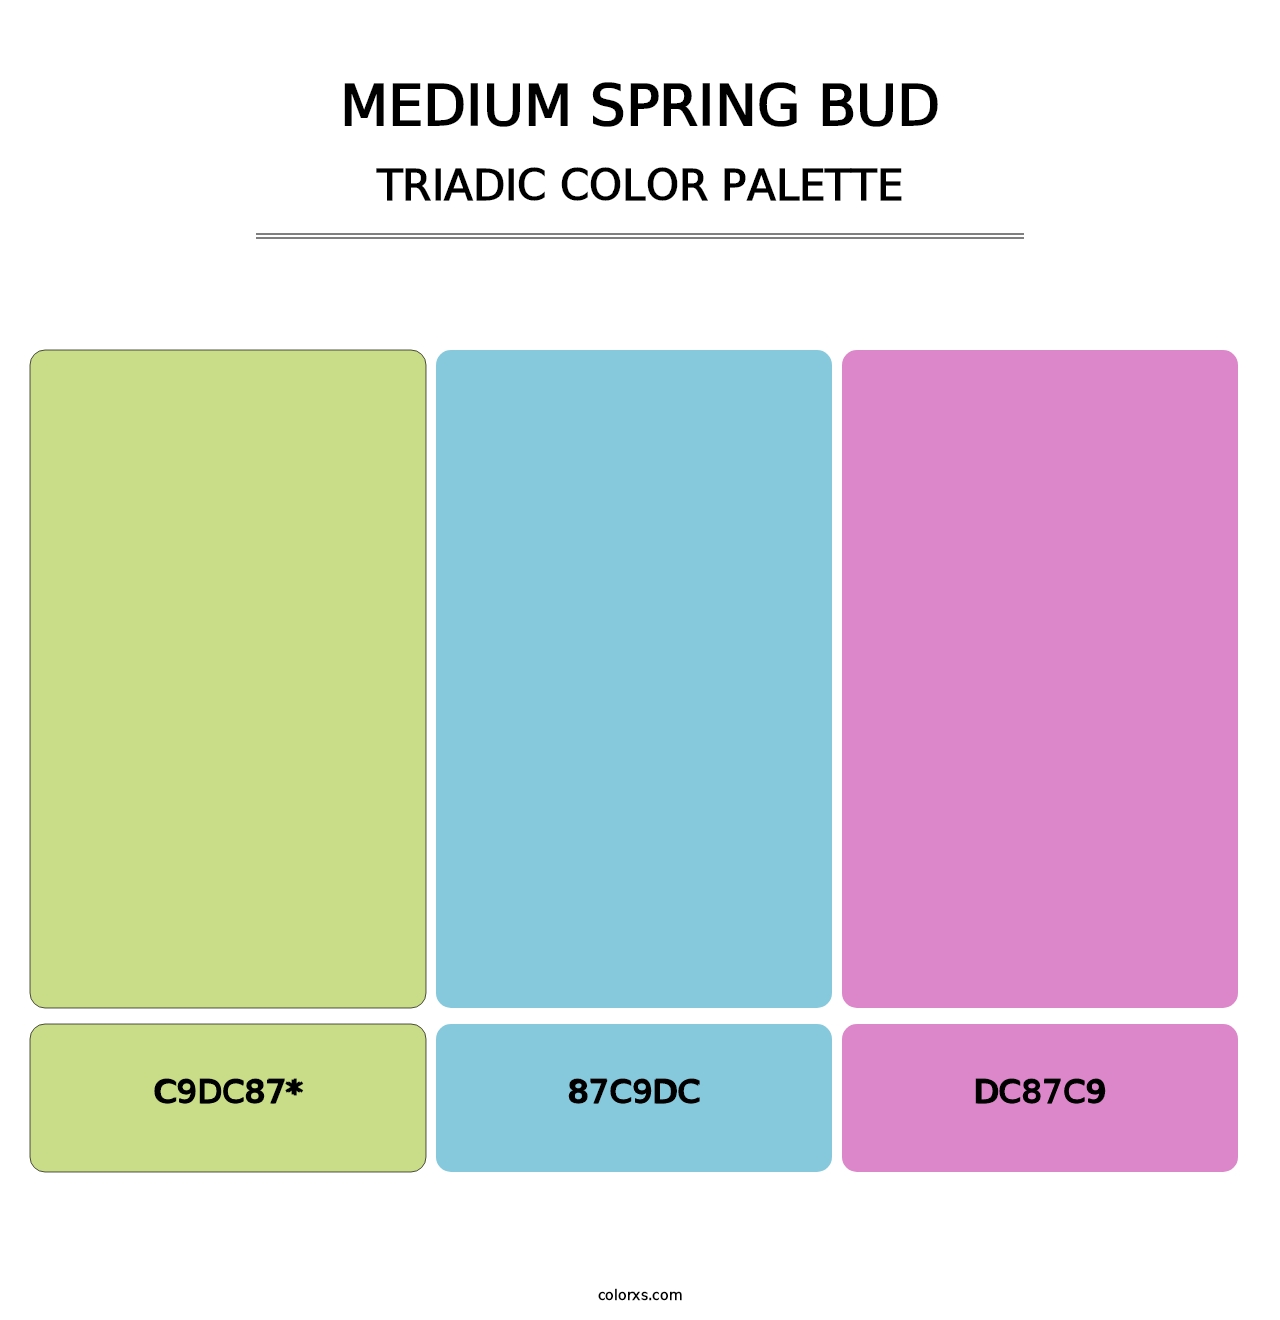 Medium Spring Bud - Triadic Color Palette